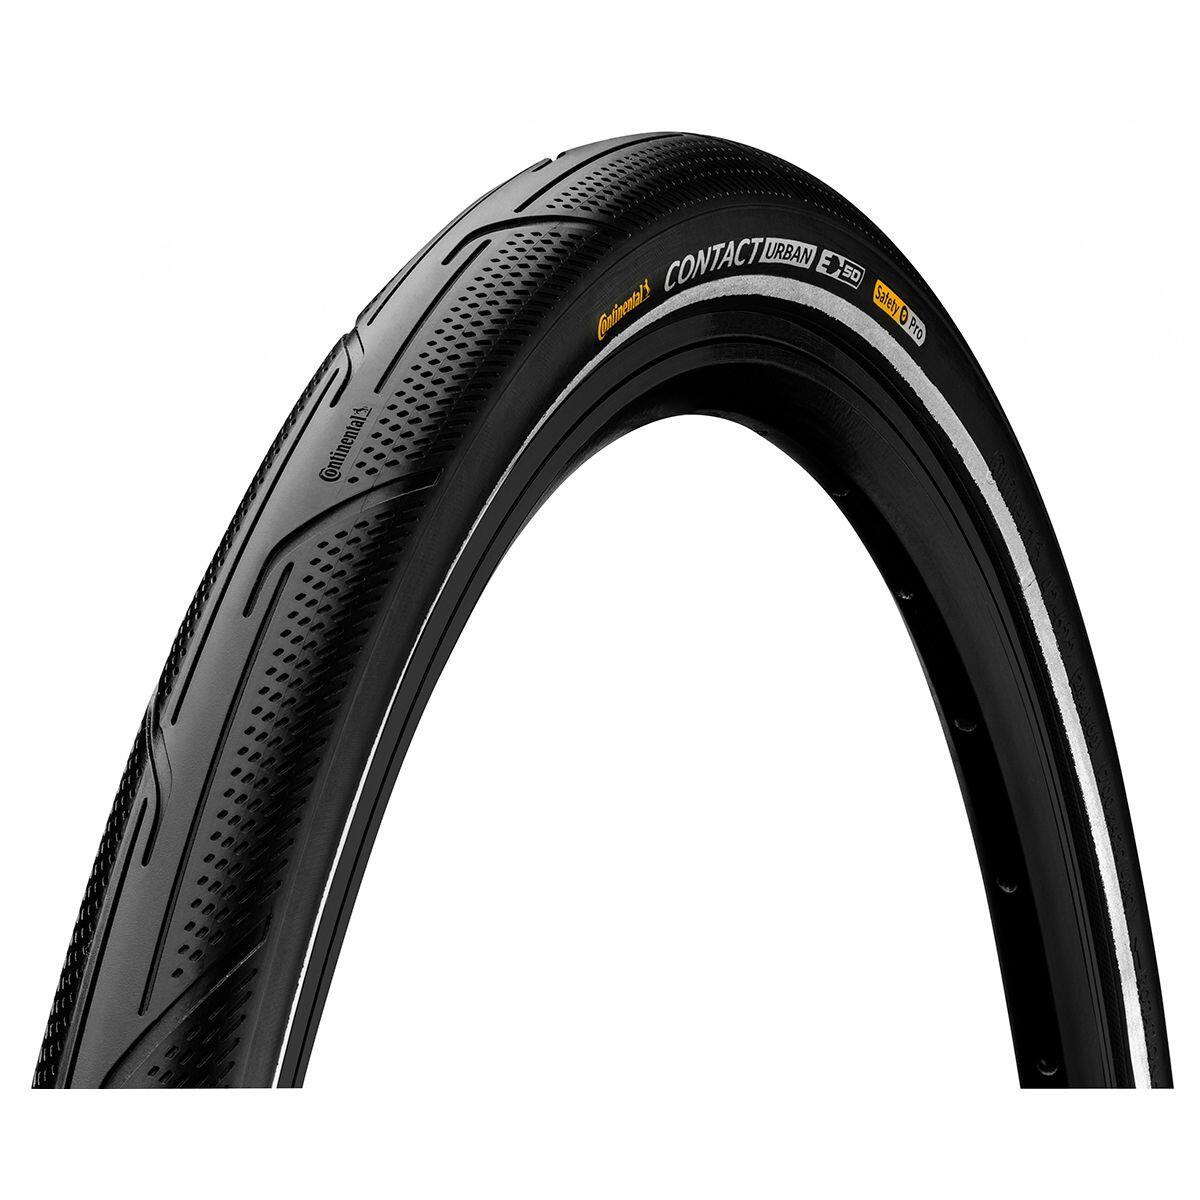 CONTACT Urban Reflex Tyre-Wire Bead PureGrip Compound Black Reflex 700 X 32C 2/2